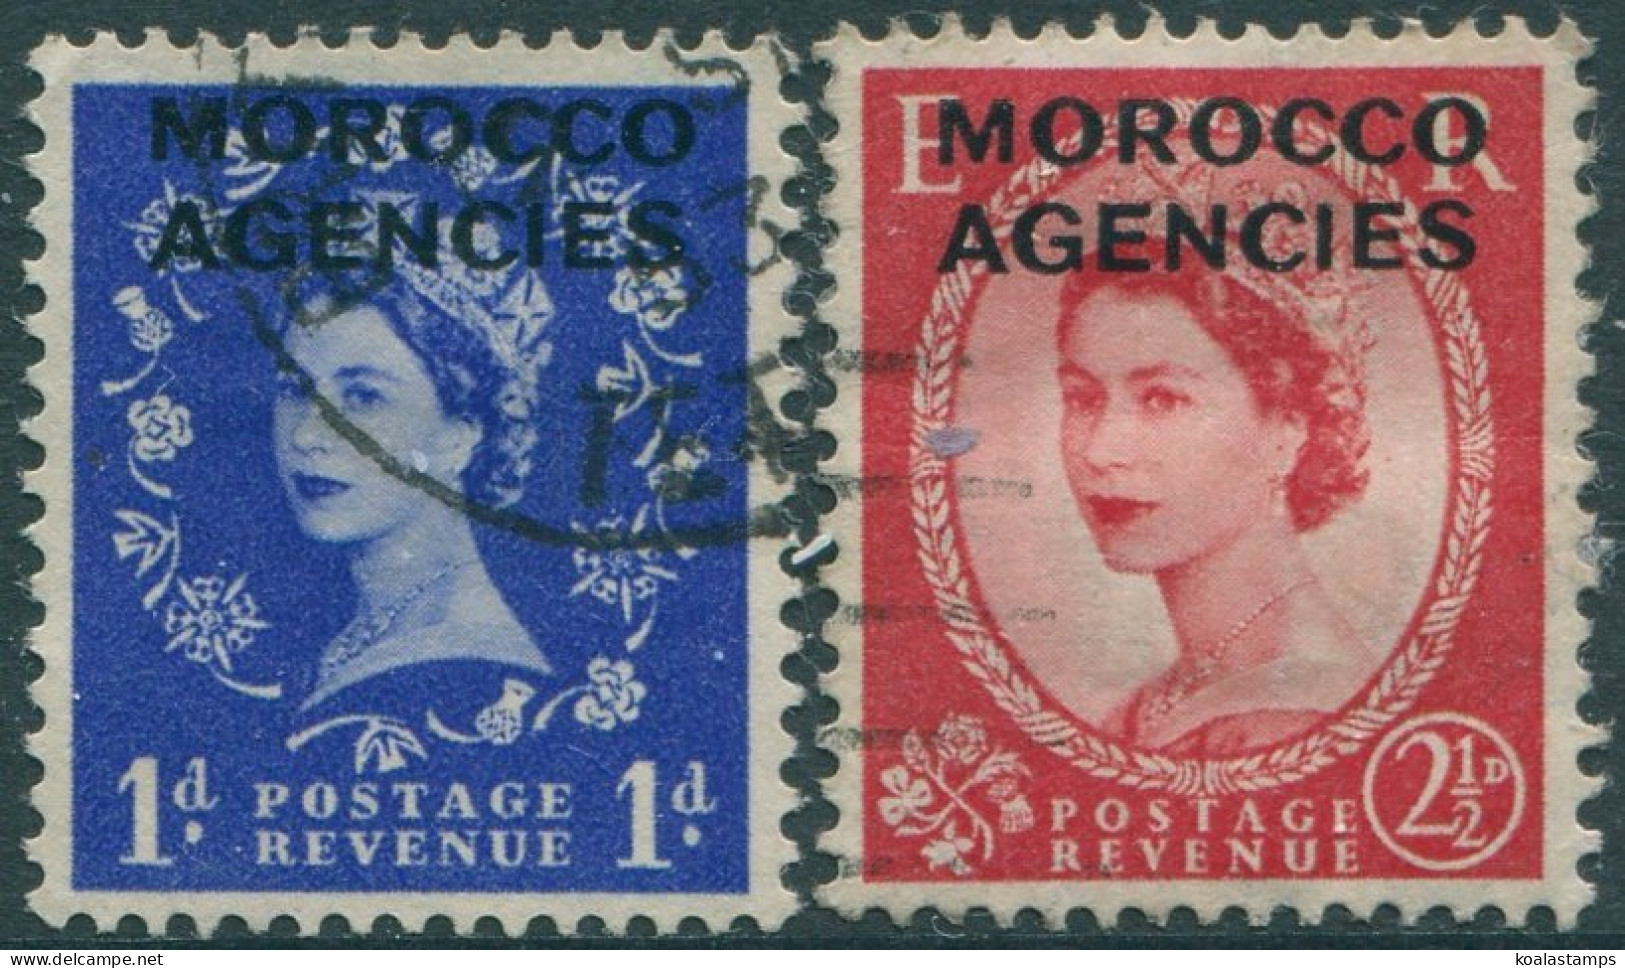 Morocco Agencies 1952 SG102-105 QEII (2) FU (amd) - Bureaux Au Maroc / Tanger (...-1958)